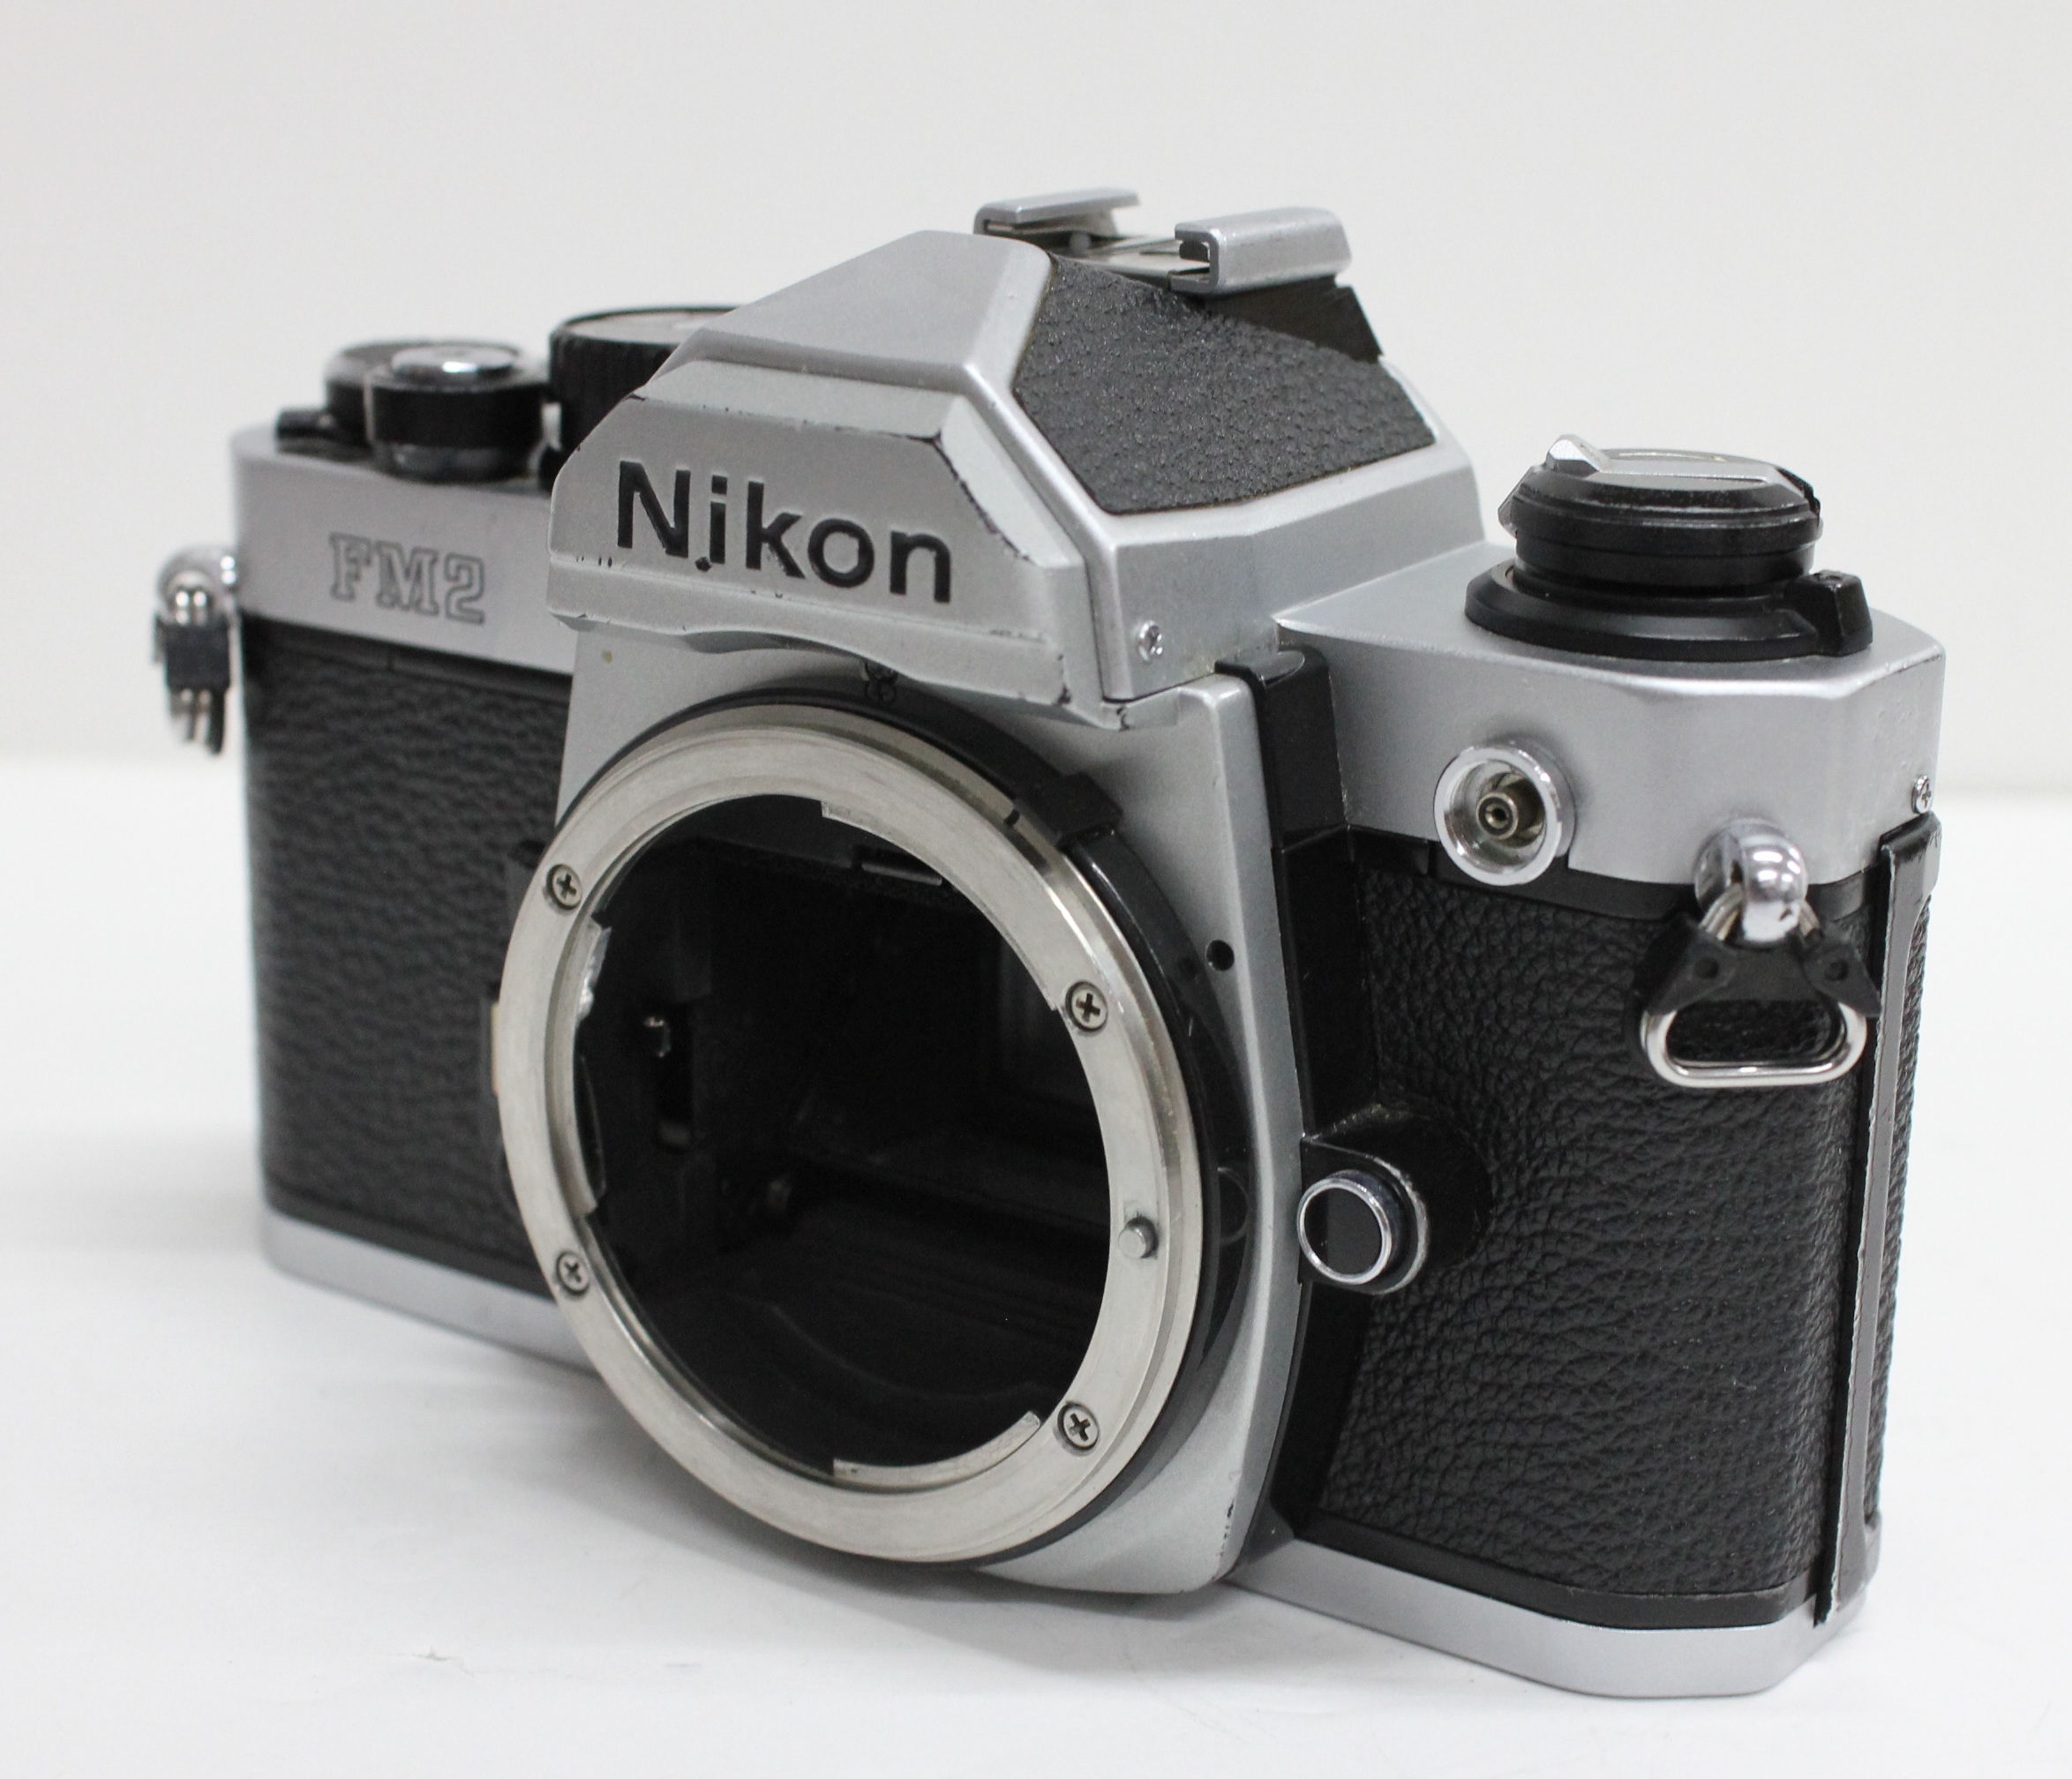 Nikon New FM2 FM2N Camera w/Ai-s 50mm F/1.4 Lens from Japan (C1164 